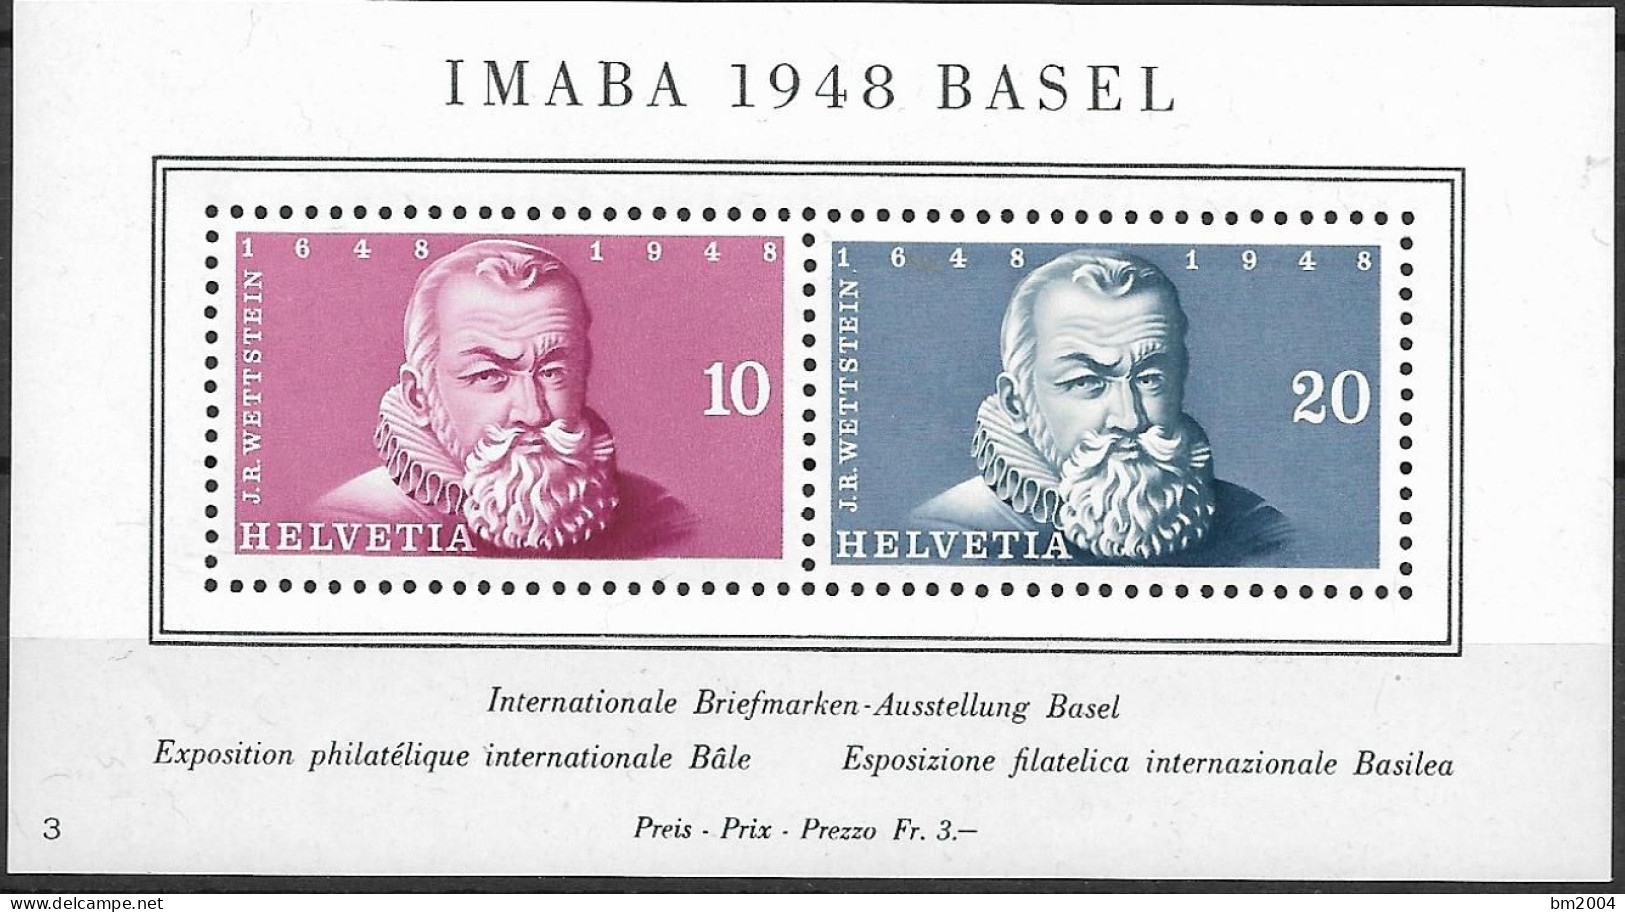 1948 Schweiz Mi. Bl. 13**MNH Internationale Briefmarkenausstellung IMABA 1948, Basel. - Ungebraucht